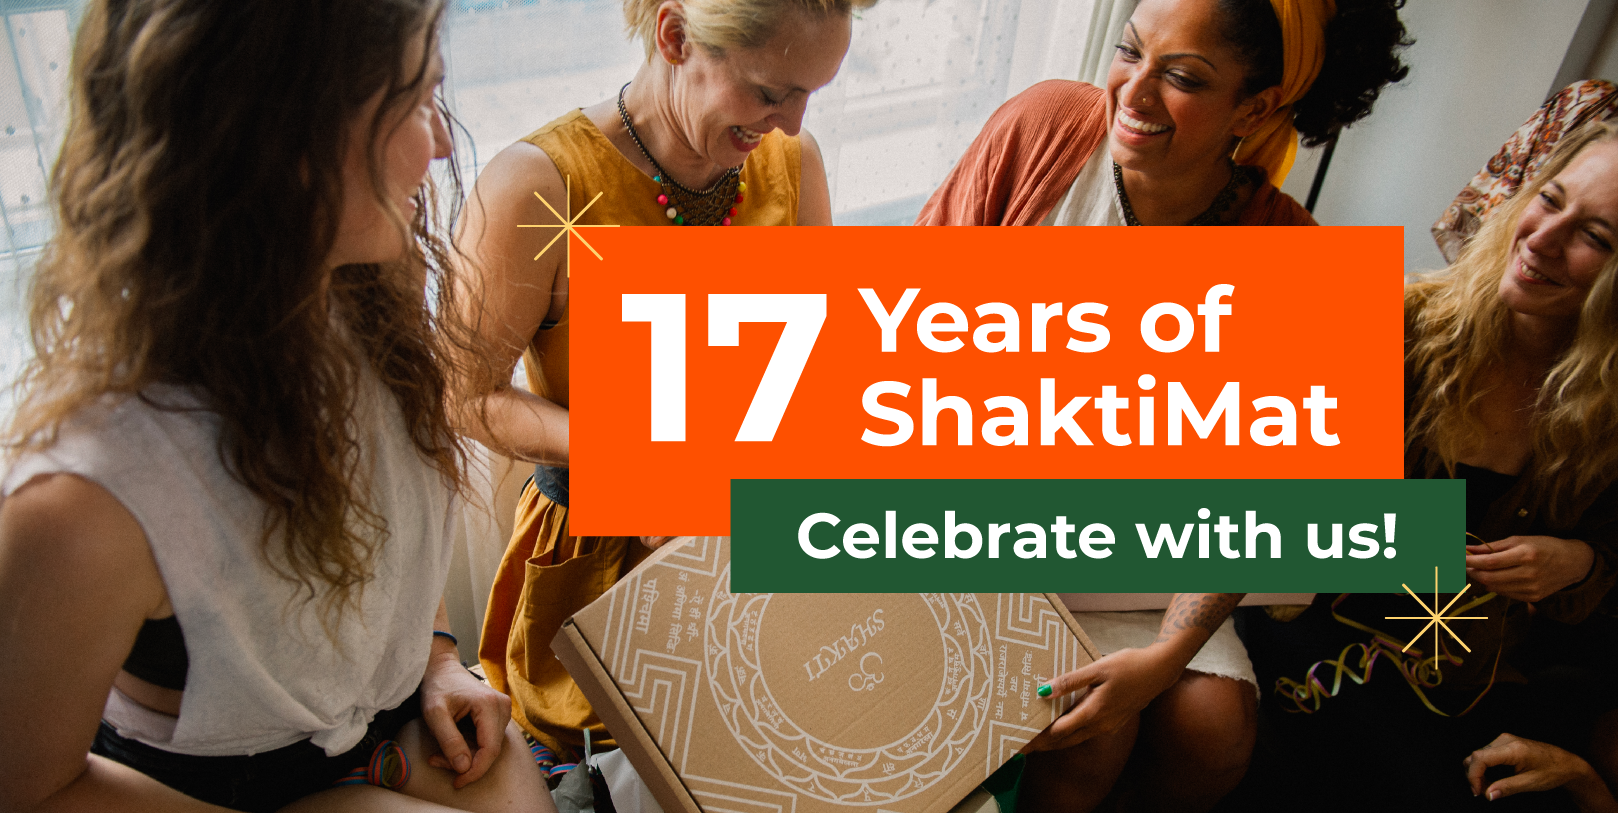 Spitzen Entspannung seit 17 Jahren - Ein Interview mit den Gründer:innen von ShaktiMat